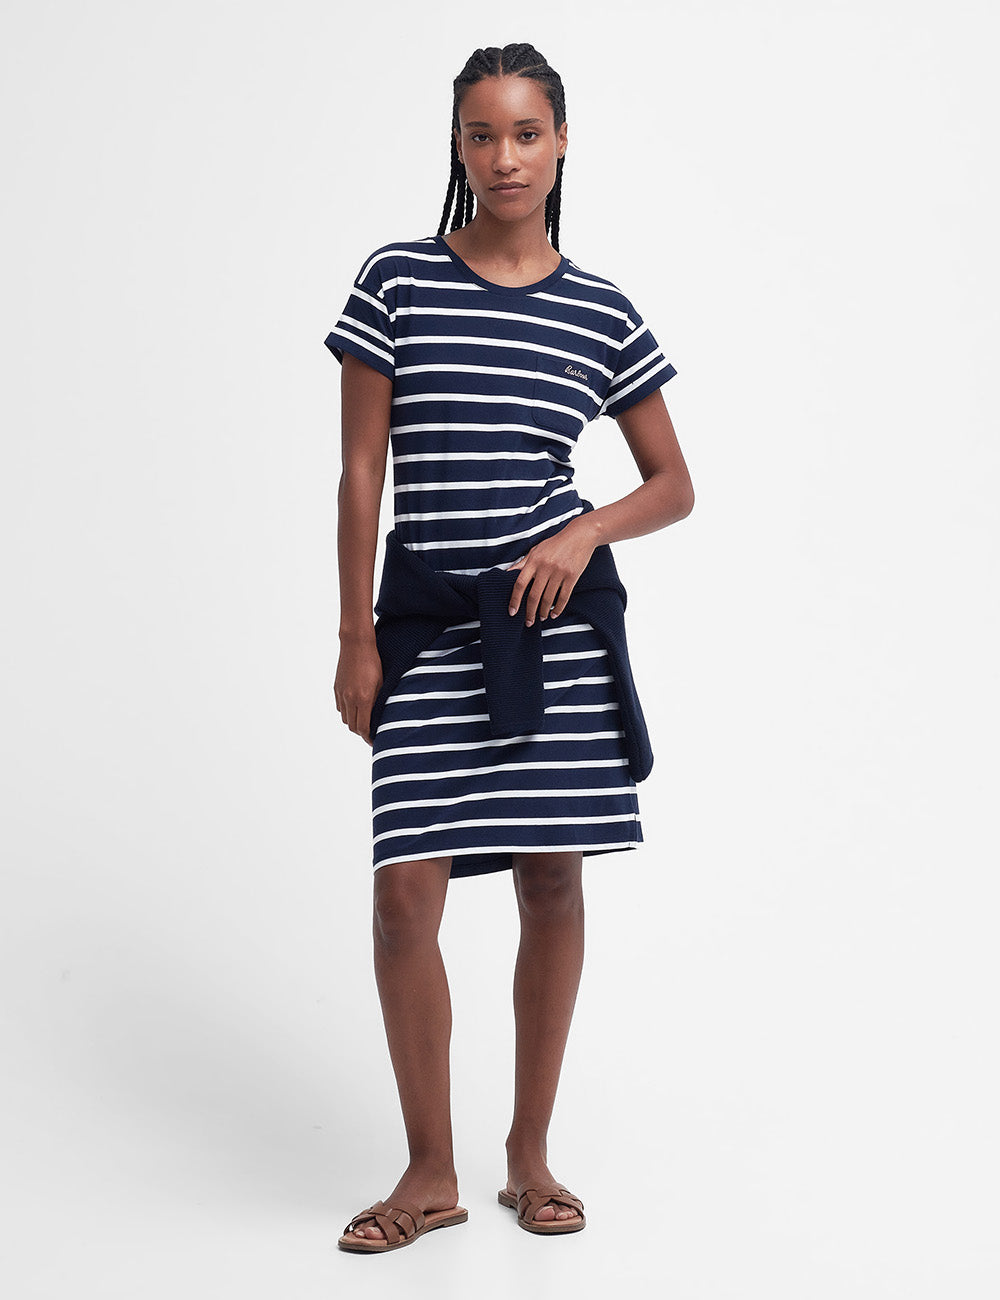 Barbour Otterburn Stripe Dress - Navy/White